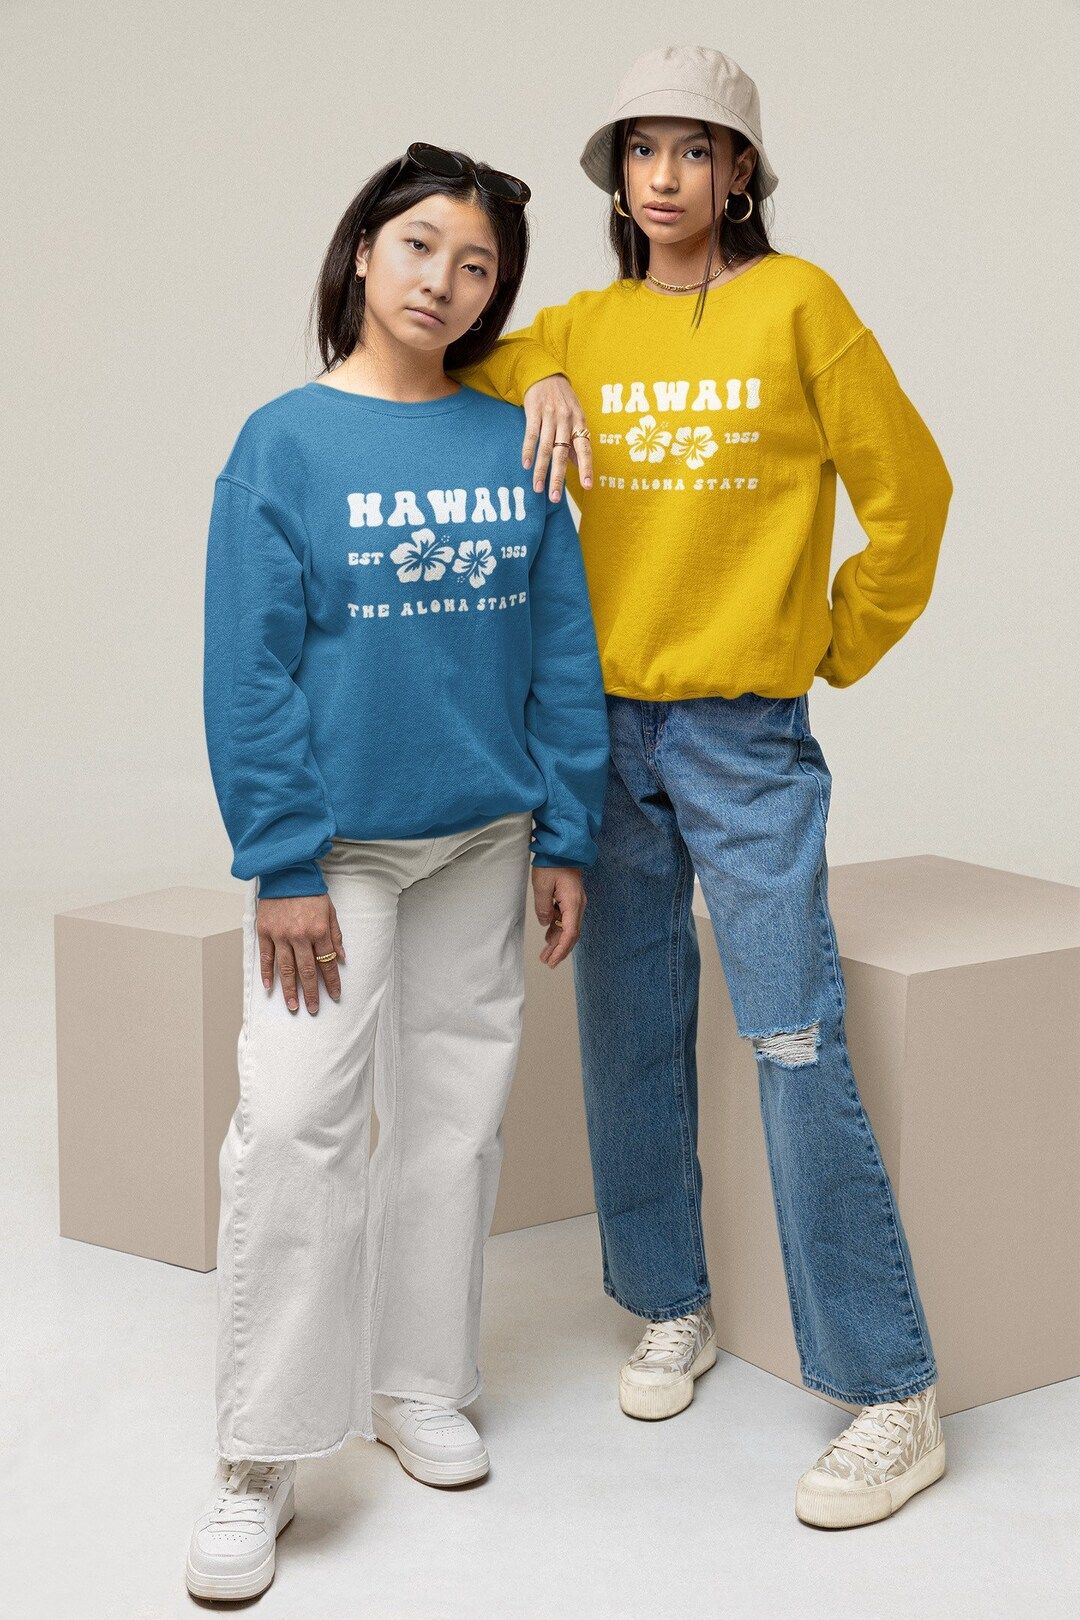 Hawaii Sweatshirt • Hawaii Crewneck • Hawaii Shirt • Beach Sweatshirt •Hawaiian Sweatshir... | Etsy (US)